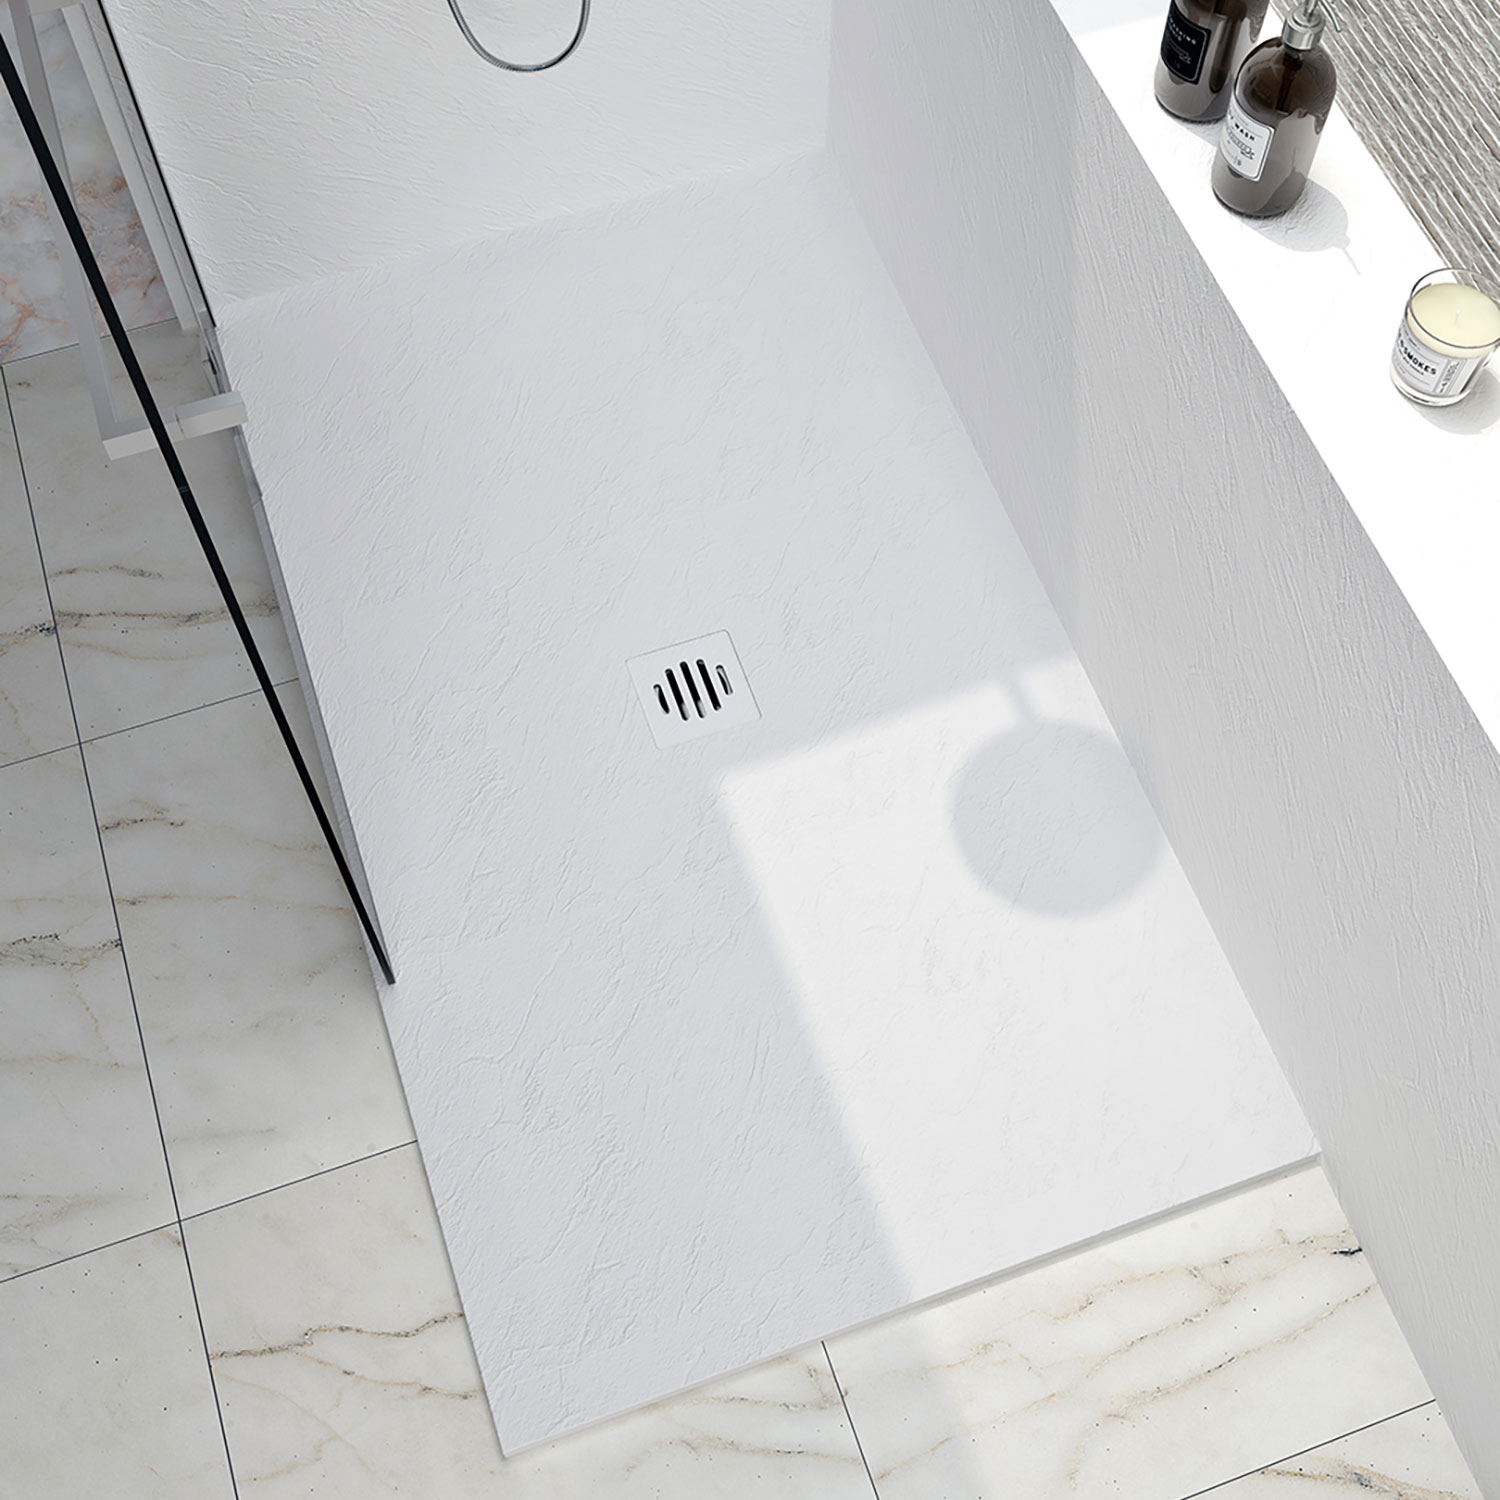 Shower base Slate 60 x 32, custom-made tile flange installation, in white